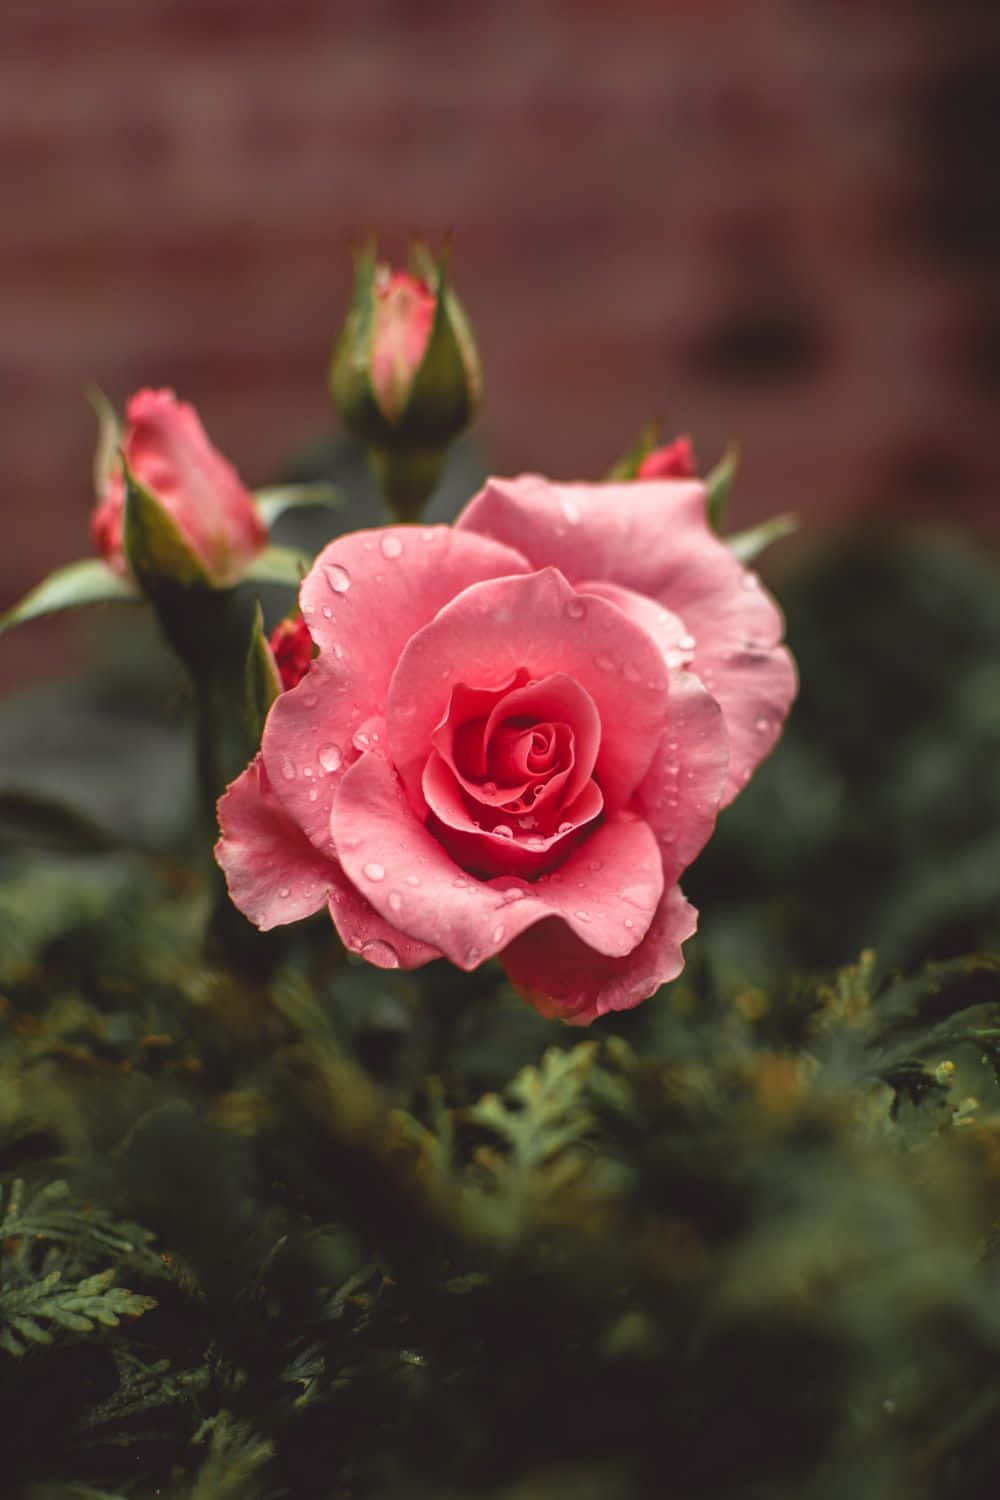 Apreciala Belleza De Las Rosas En Alta Definición.